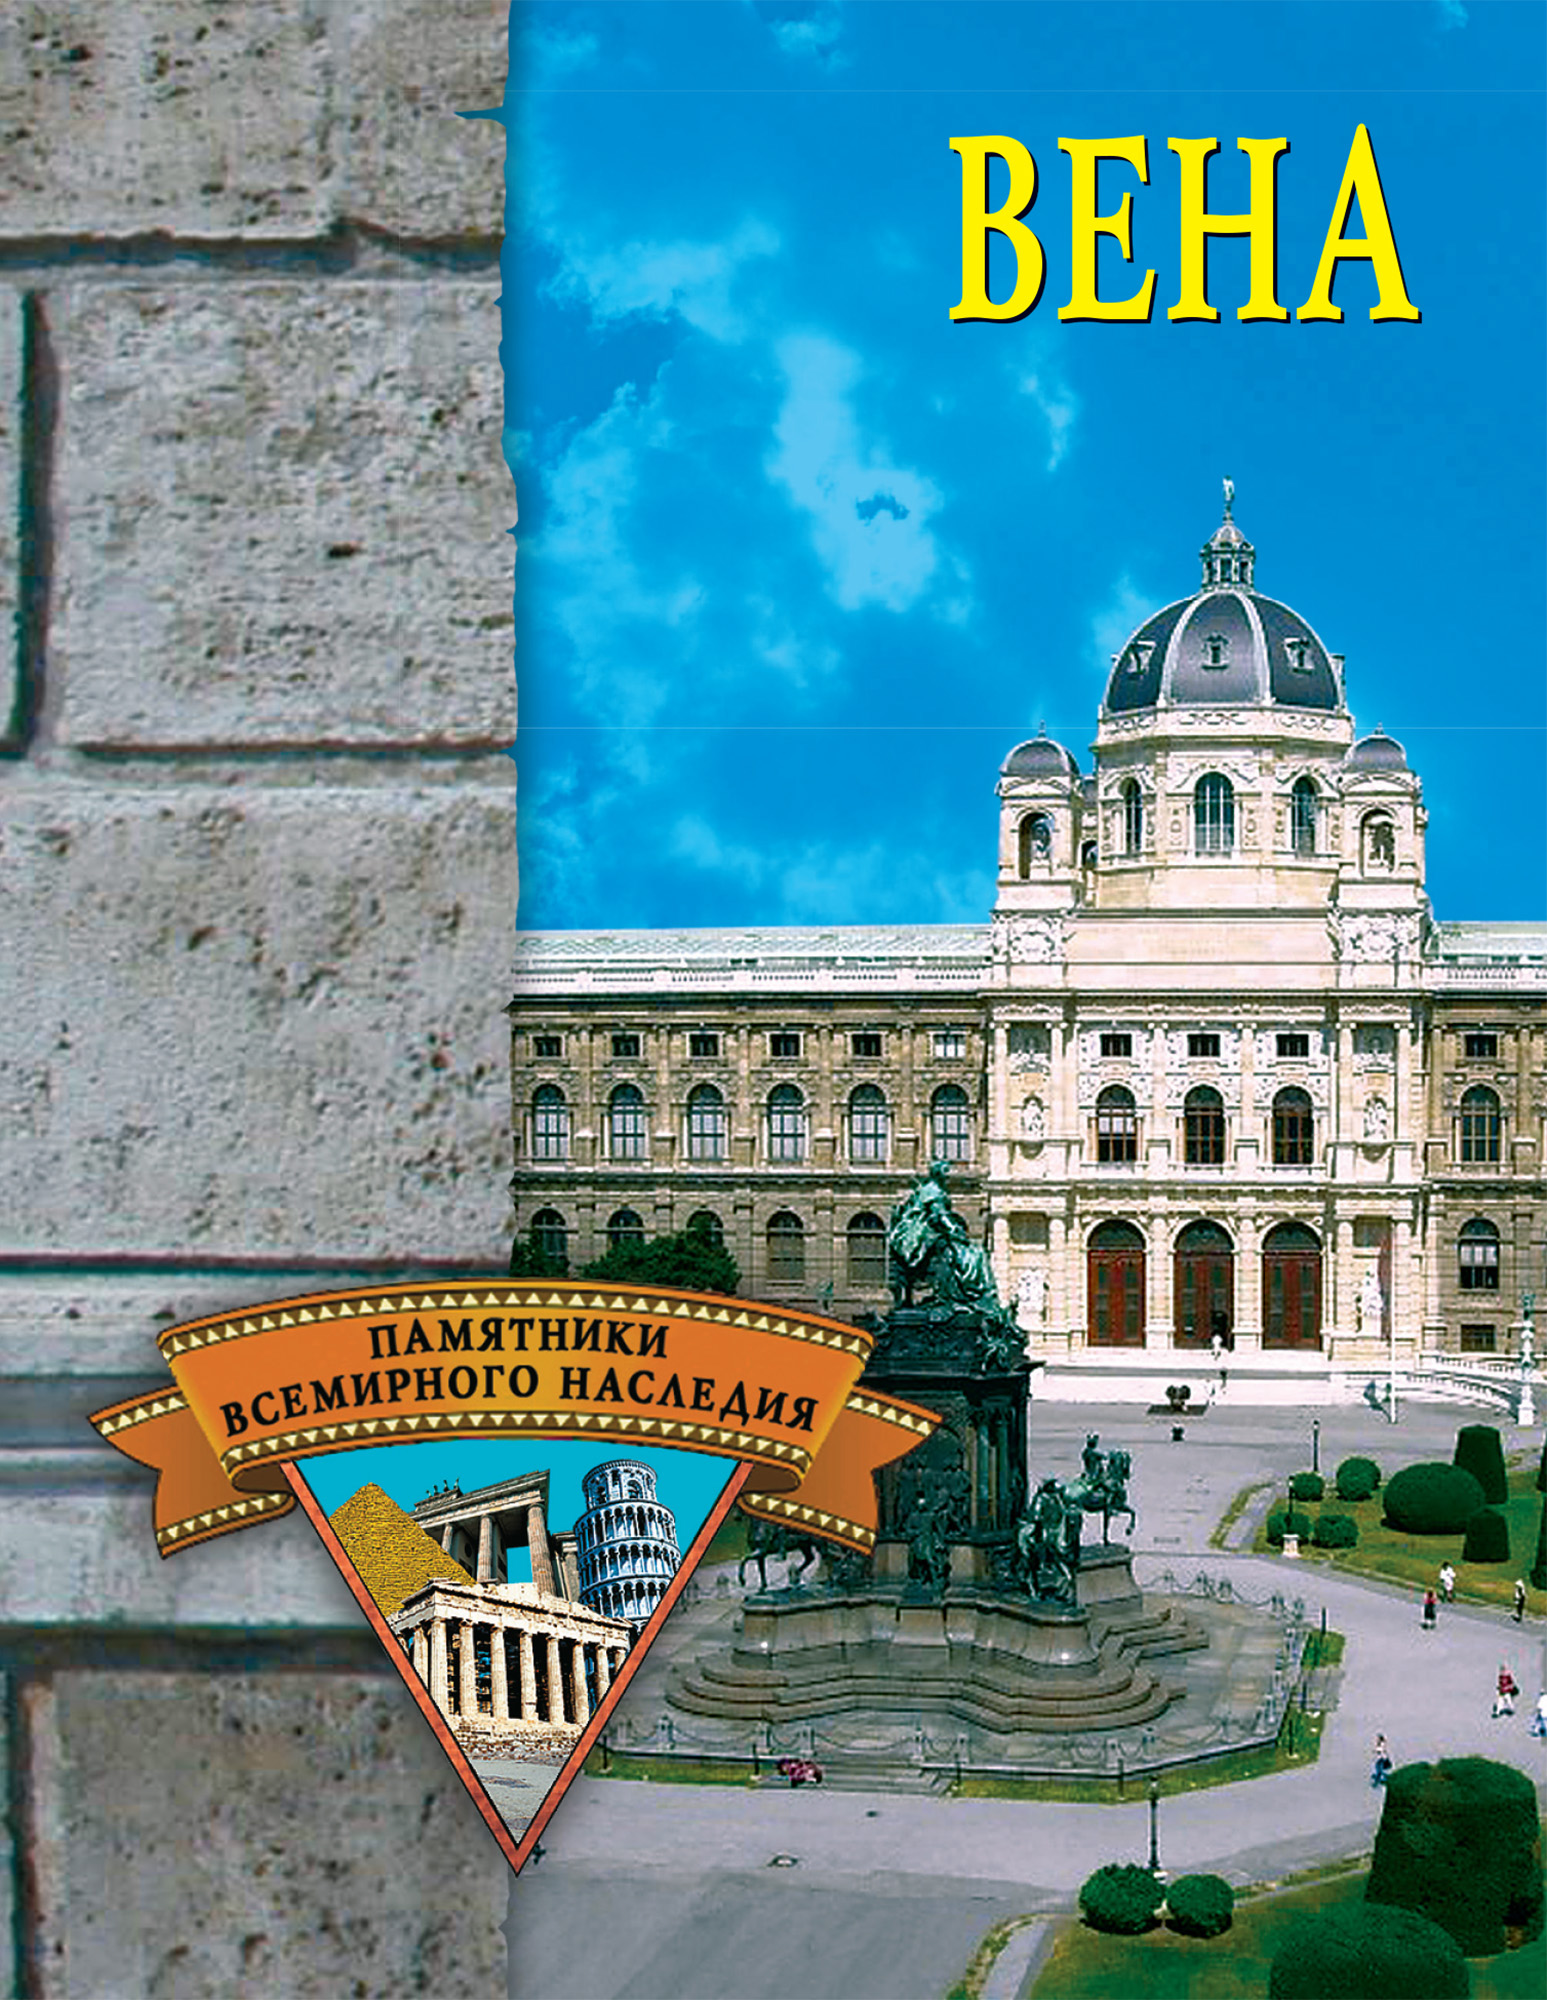 Книга Вена из серии , созданная Елена Грицак, может относится к жанру Архитектура, История, Путеводители. Стоимость книги Вена  с идентификатором 167442 составляет 99.00 руб.